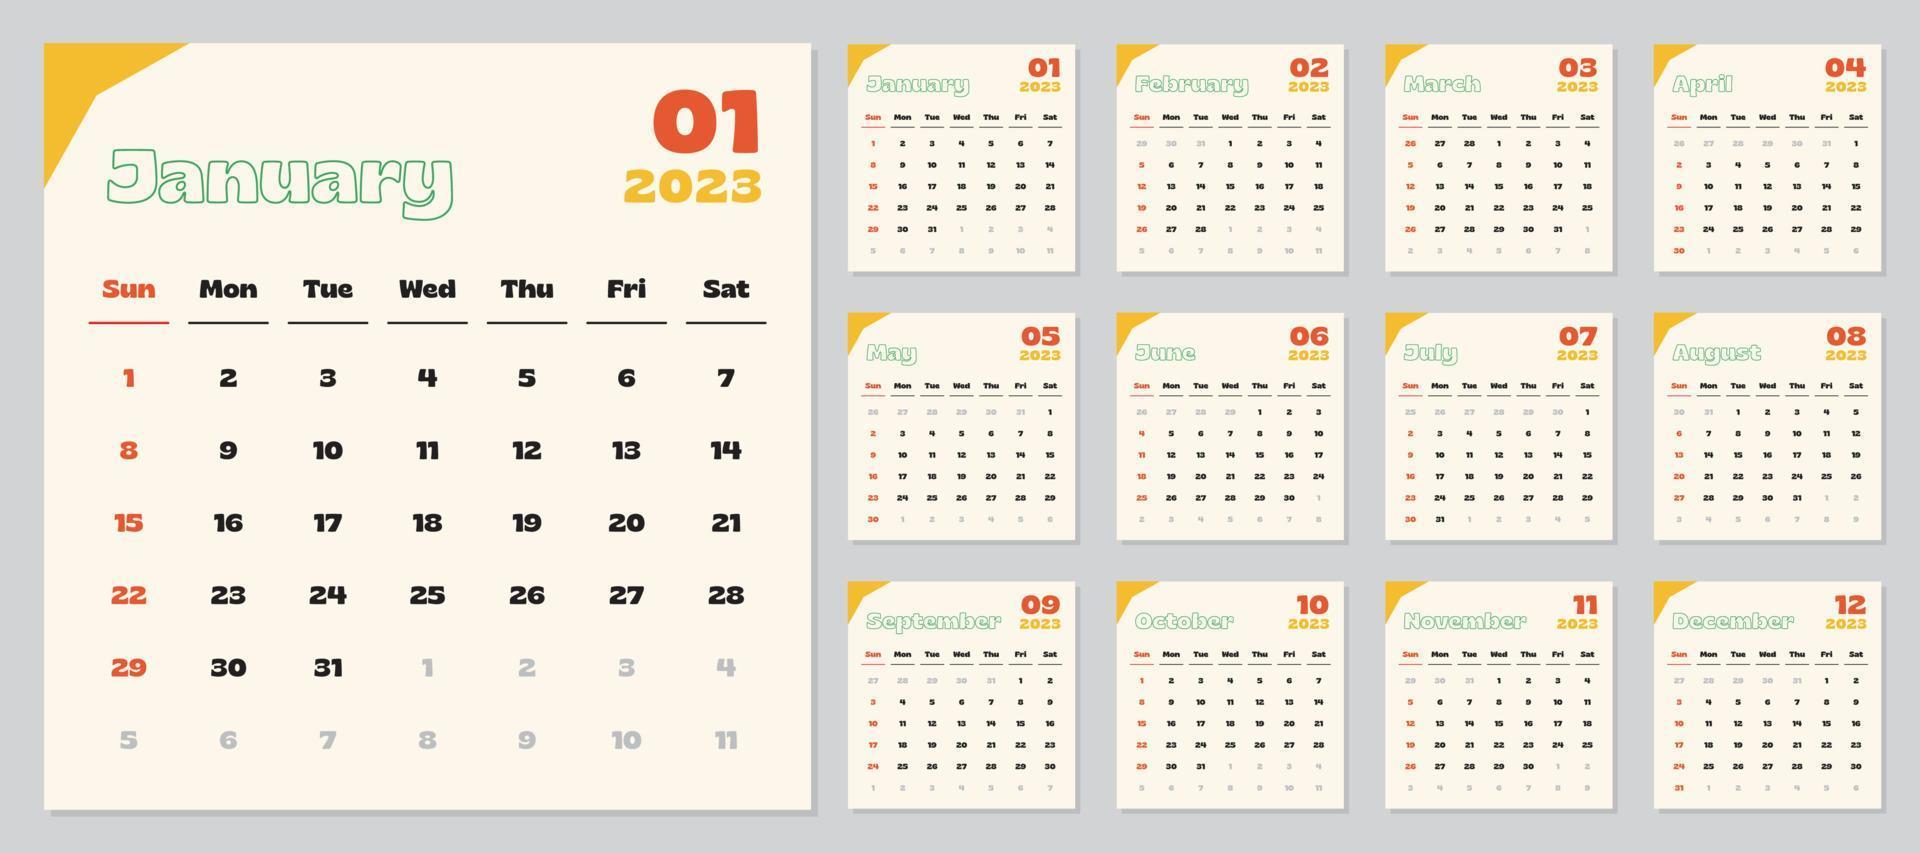 2023 Kalender, Monat Jahr Datum, Start auf Sonntag, Vektor